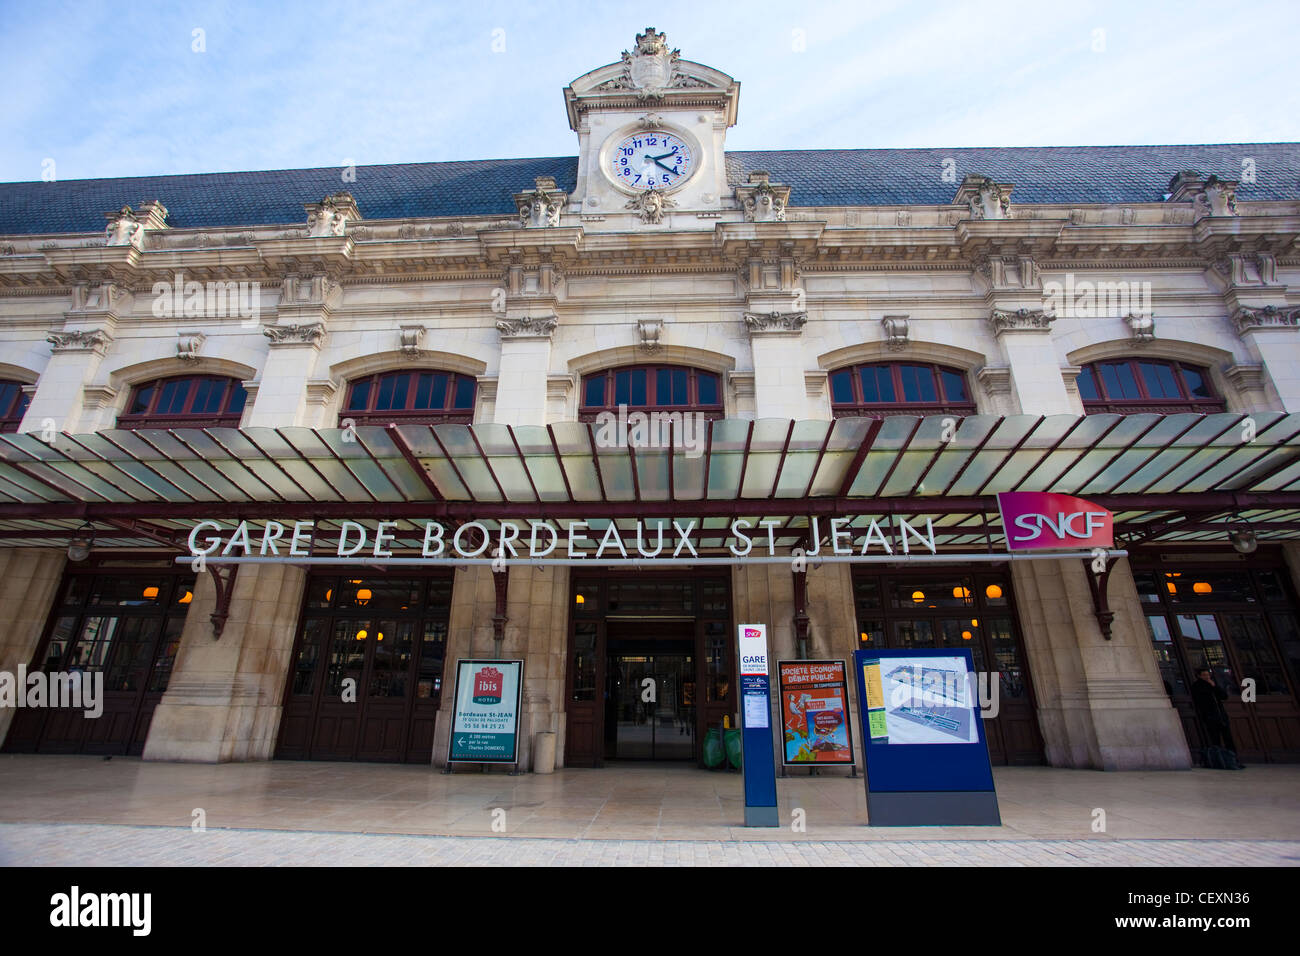 Gare de Bordeaux St Jean railway station, Bordeaux, France Stock Photo -  Alamy